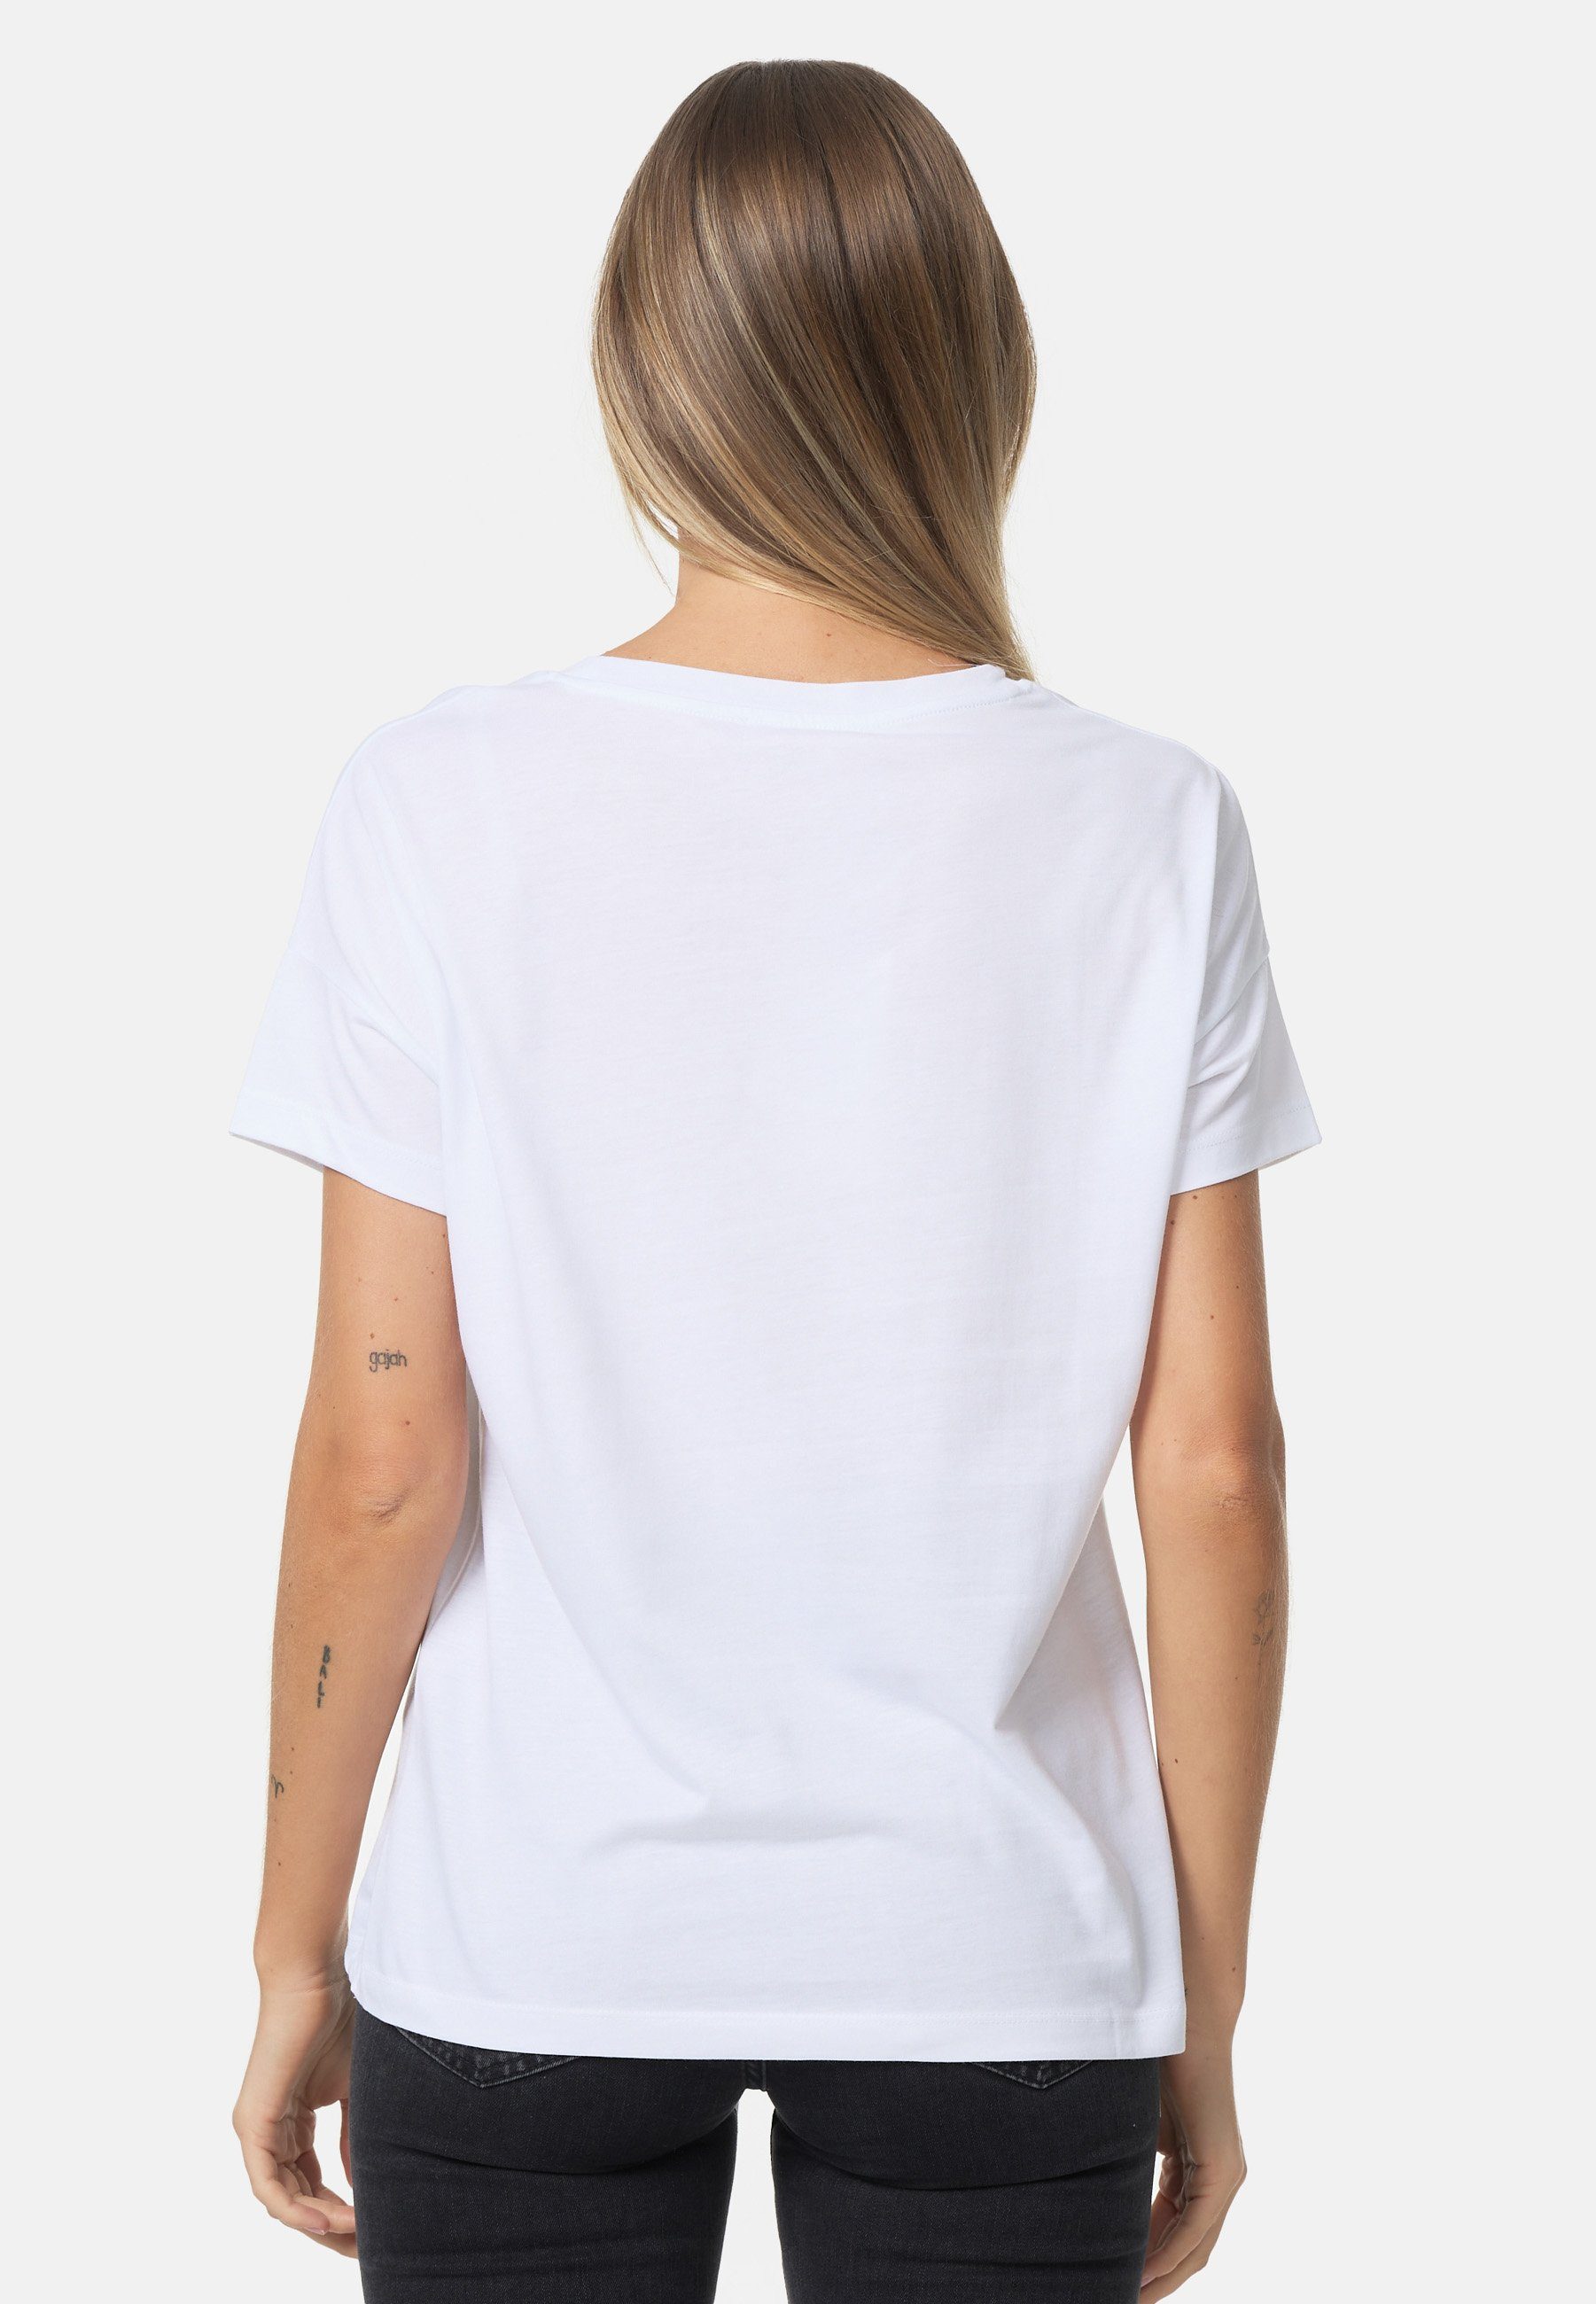 weiß-beige Decay schimmerndem T-Shirt mit Schriftzug